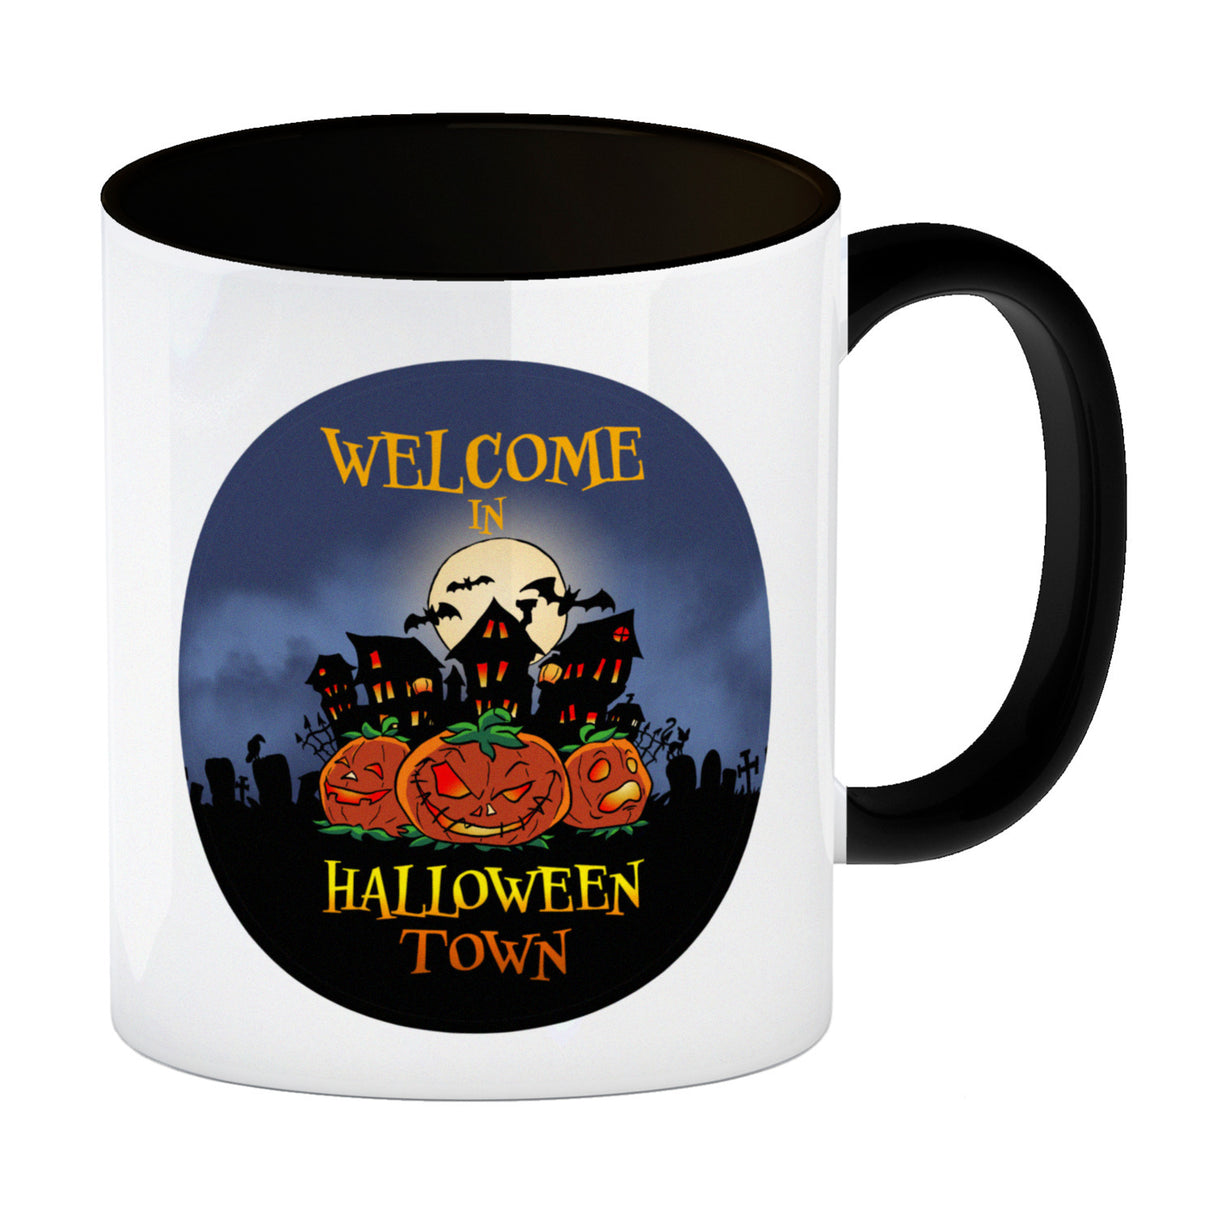 Kaffeebecher mit gruseligem Motiv und Spruch - Welcome in Halloween Town -